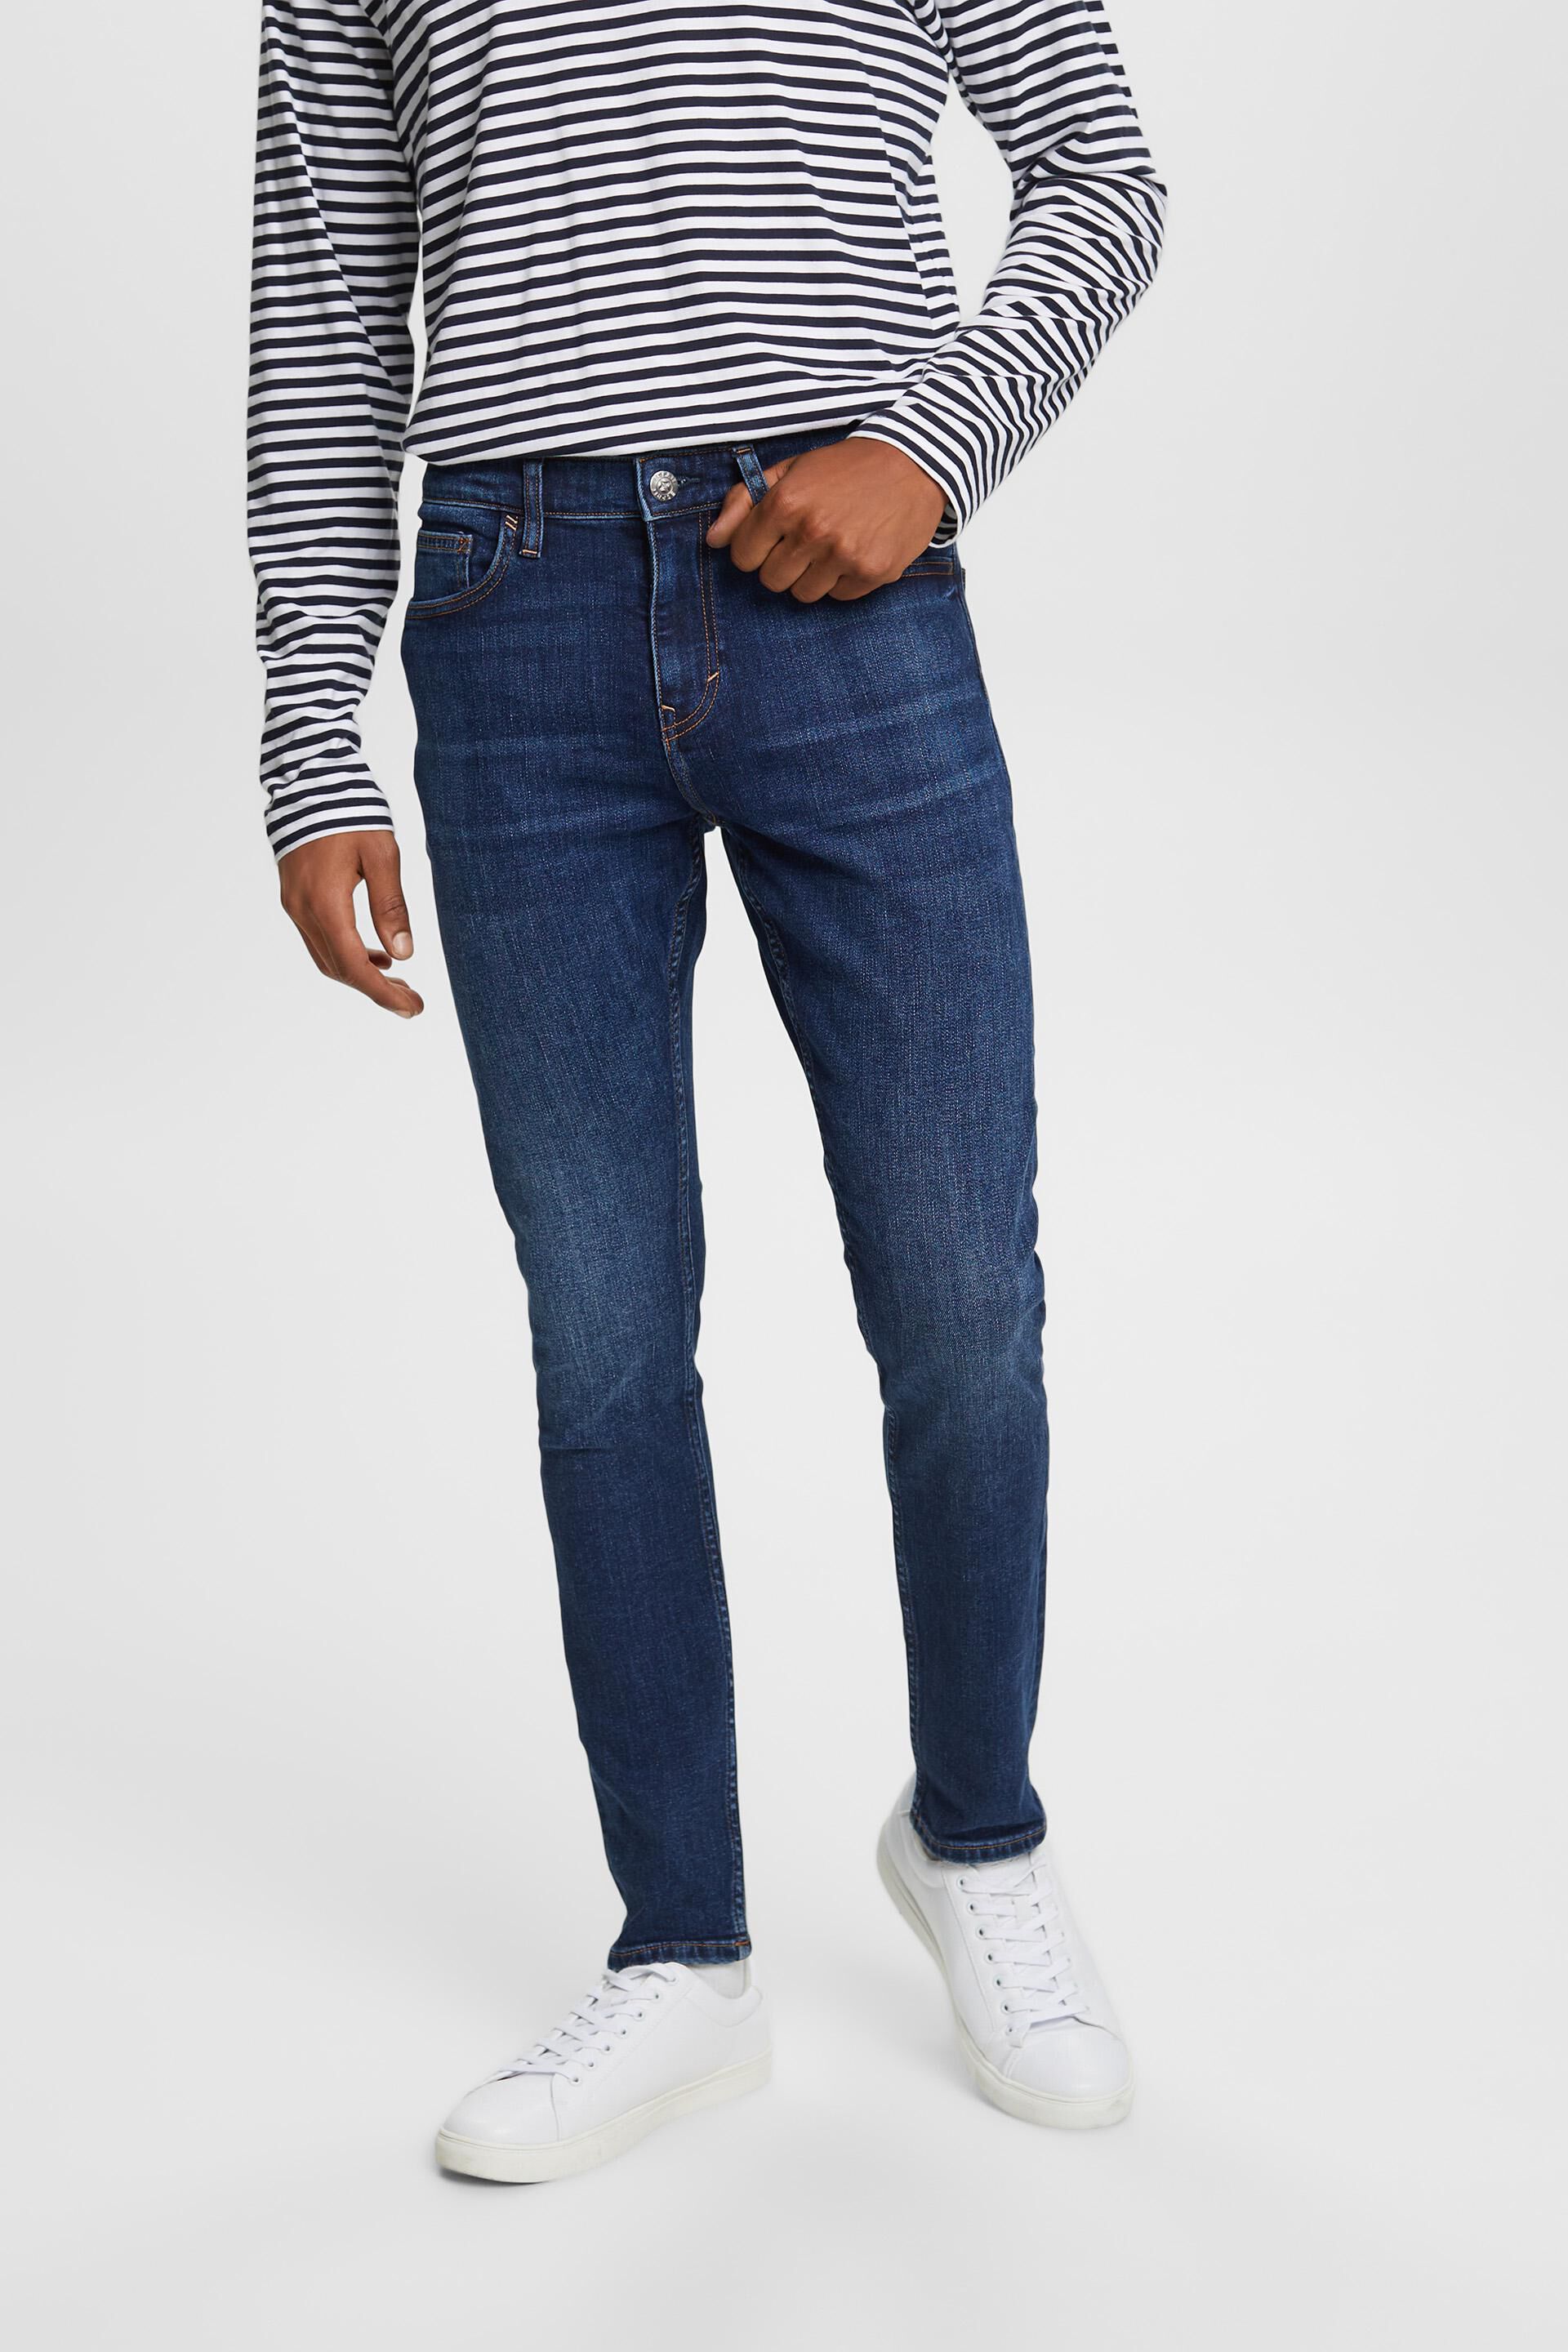 Esprit Bikini Skinny jeans, recycled stretch cotton